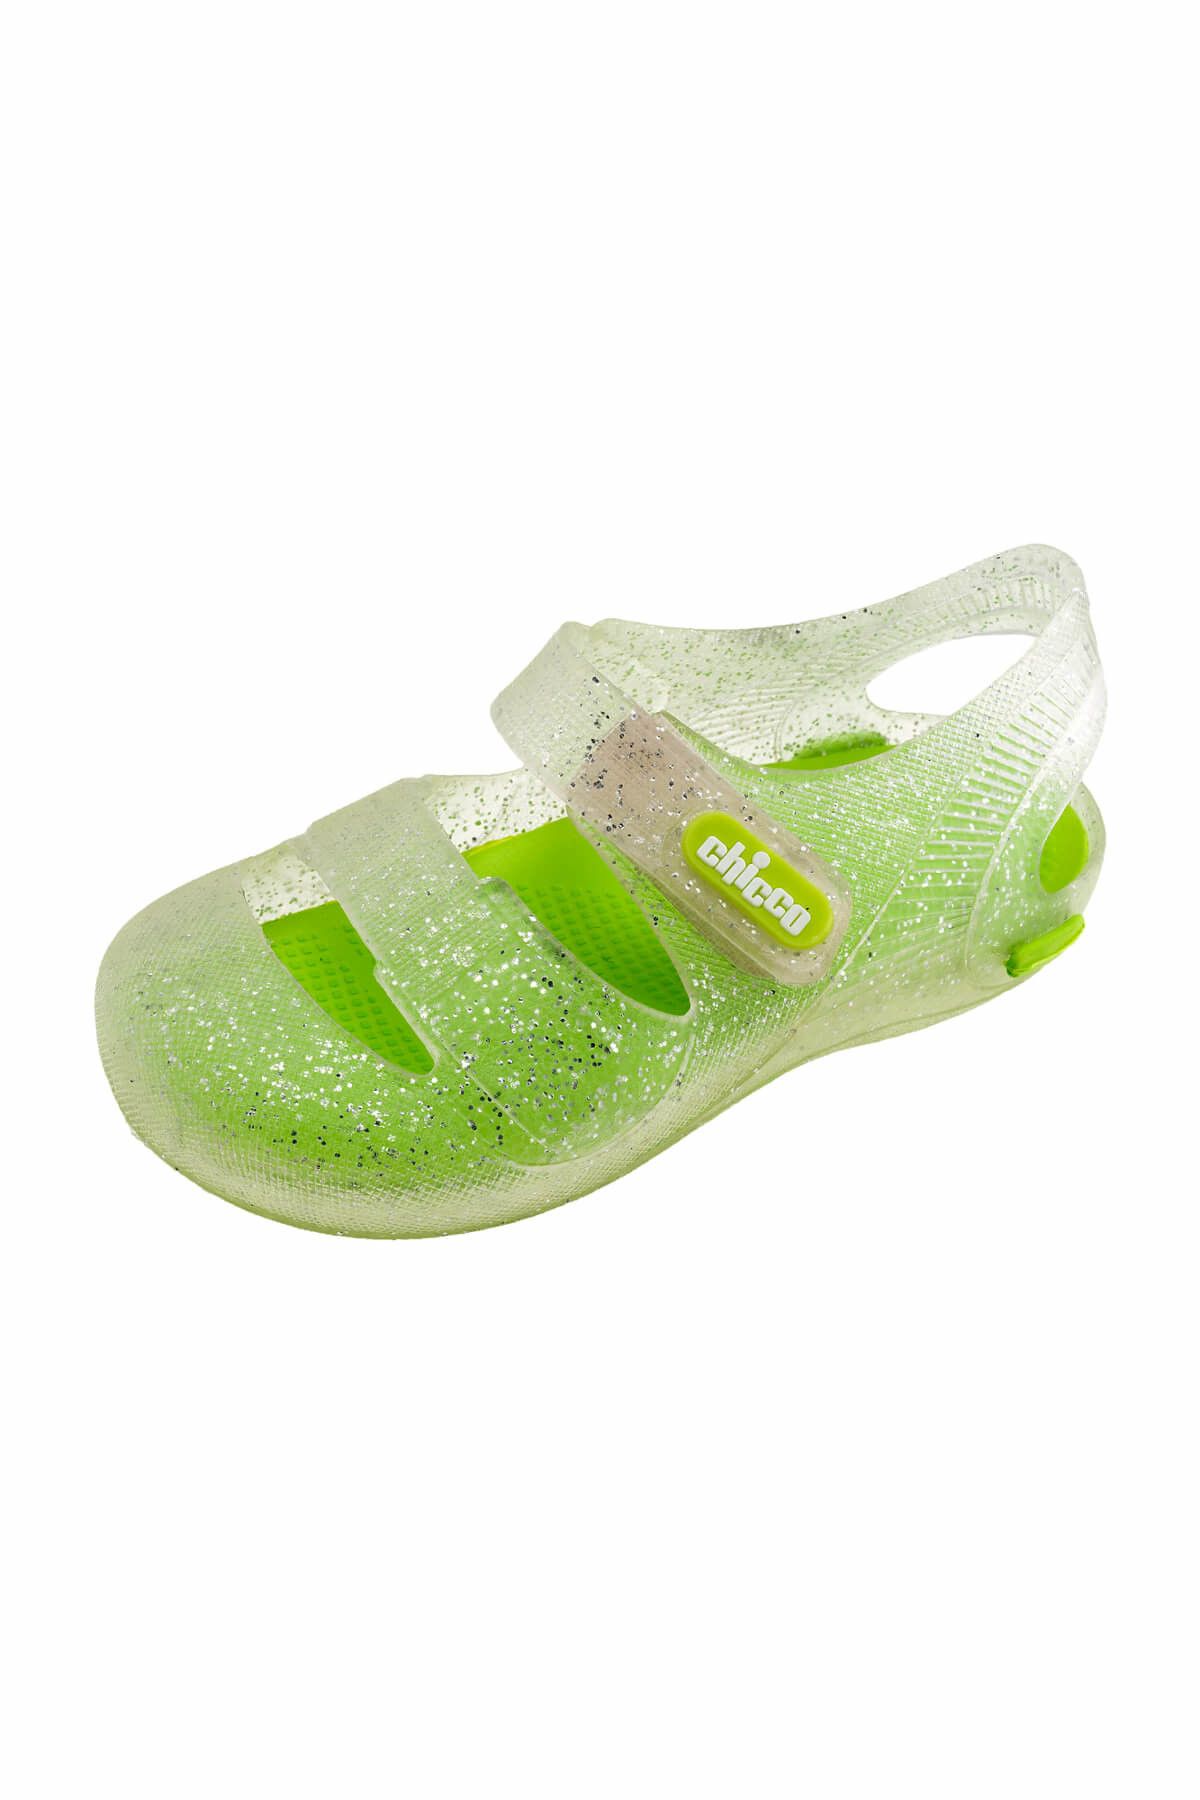 Chicco Yeşil Kız Çocuk Sandalet 01059754000000